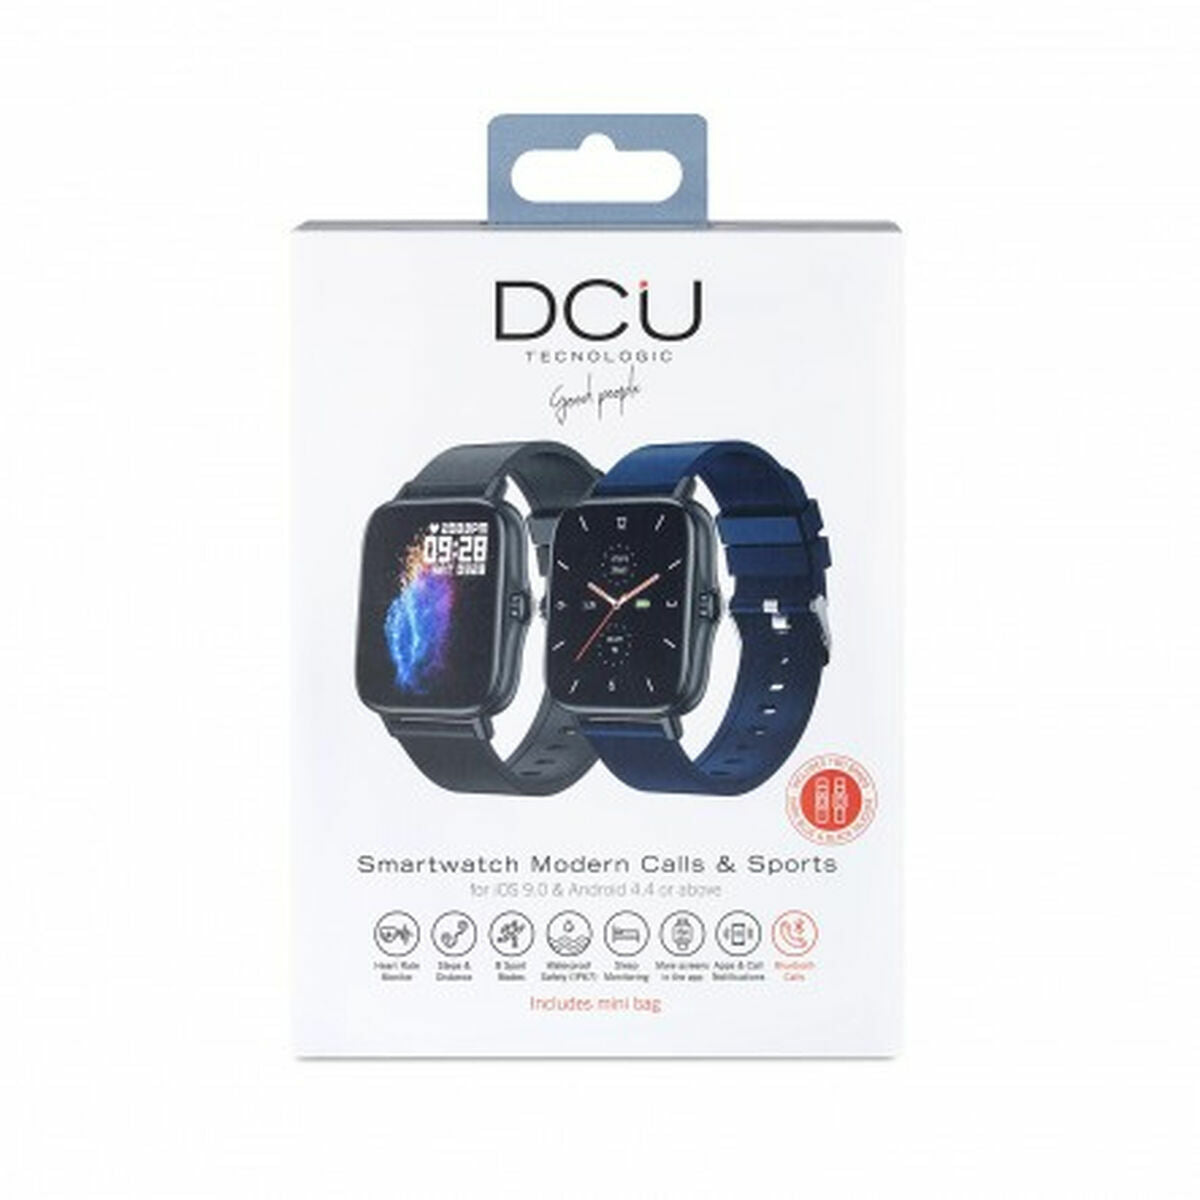 Smartwatch DCU MODERN CALLS & SPORT 1,7" Marineblau 28 mm 1" Blau Schwarz Schwarz/Weiß - CA International 